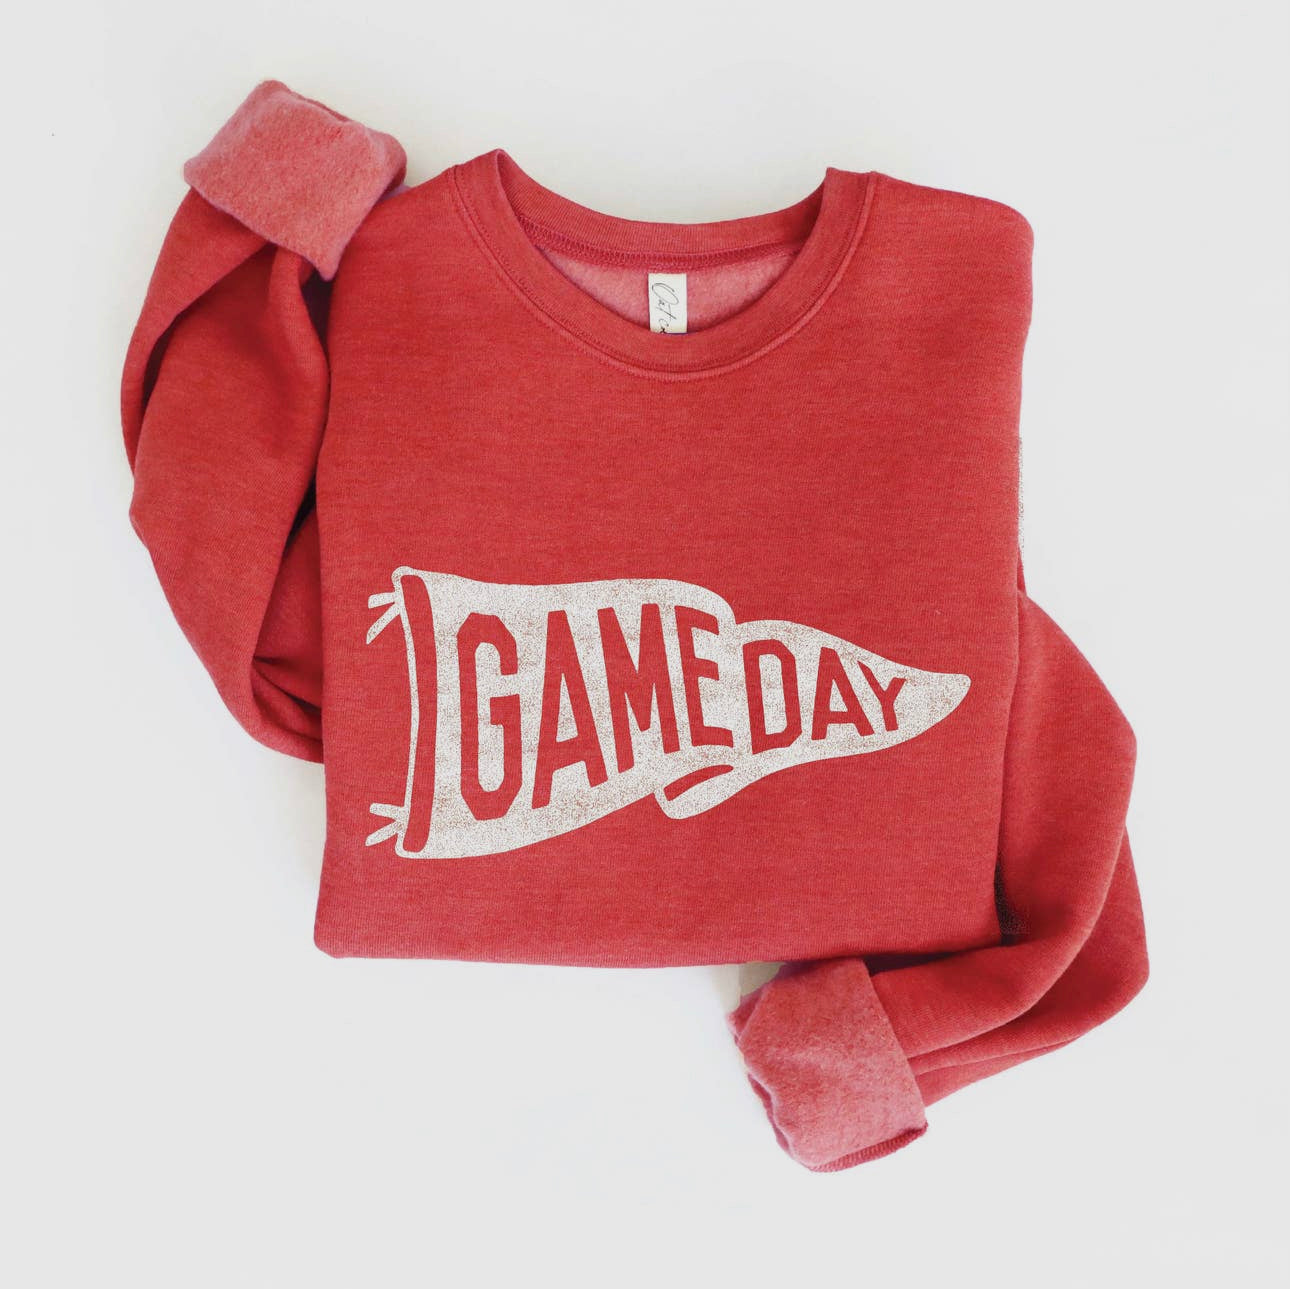 Game Day Crewneck Sweatshirt